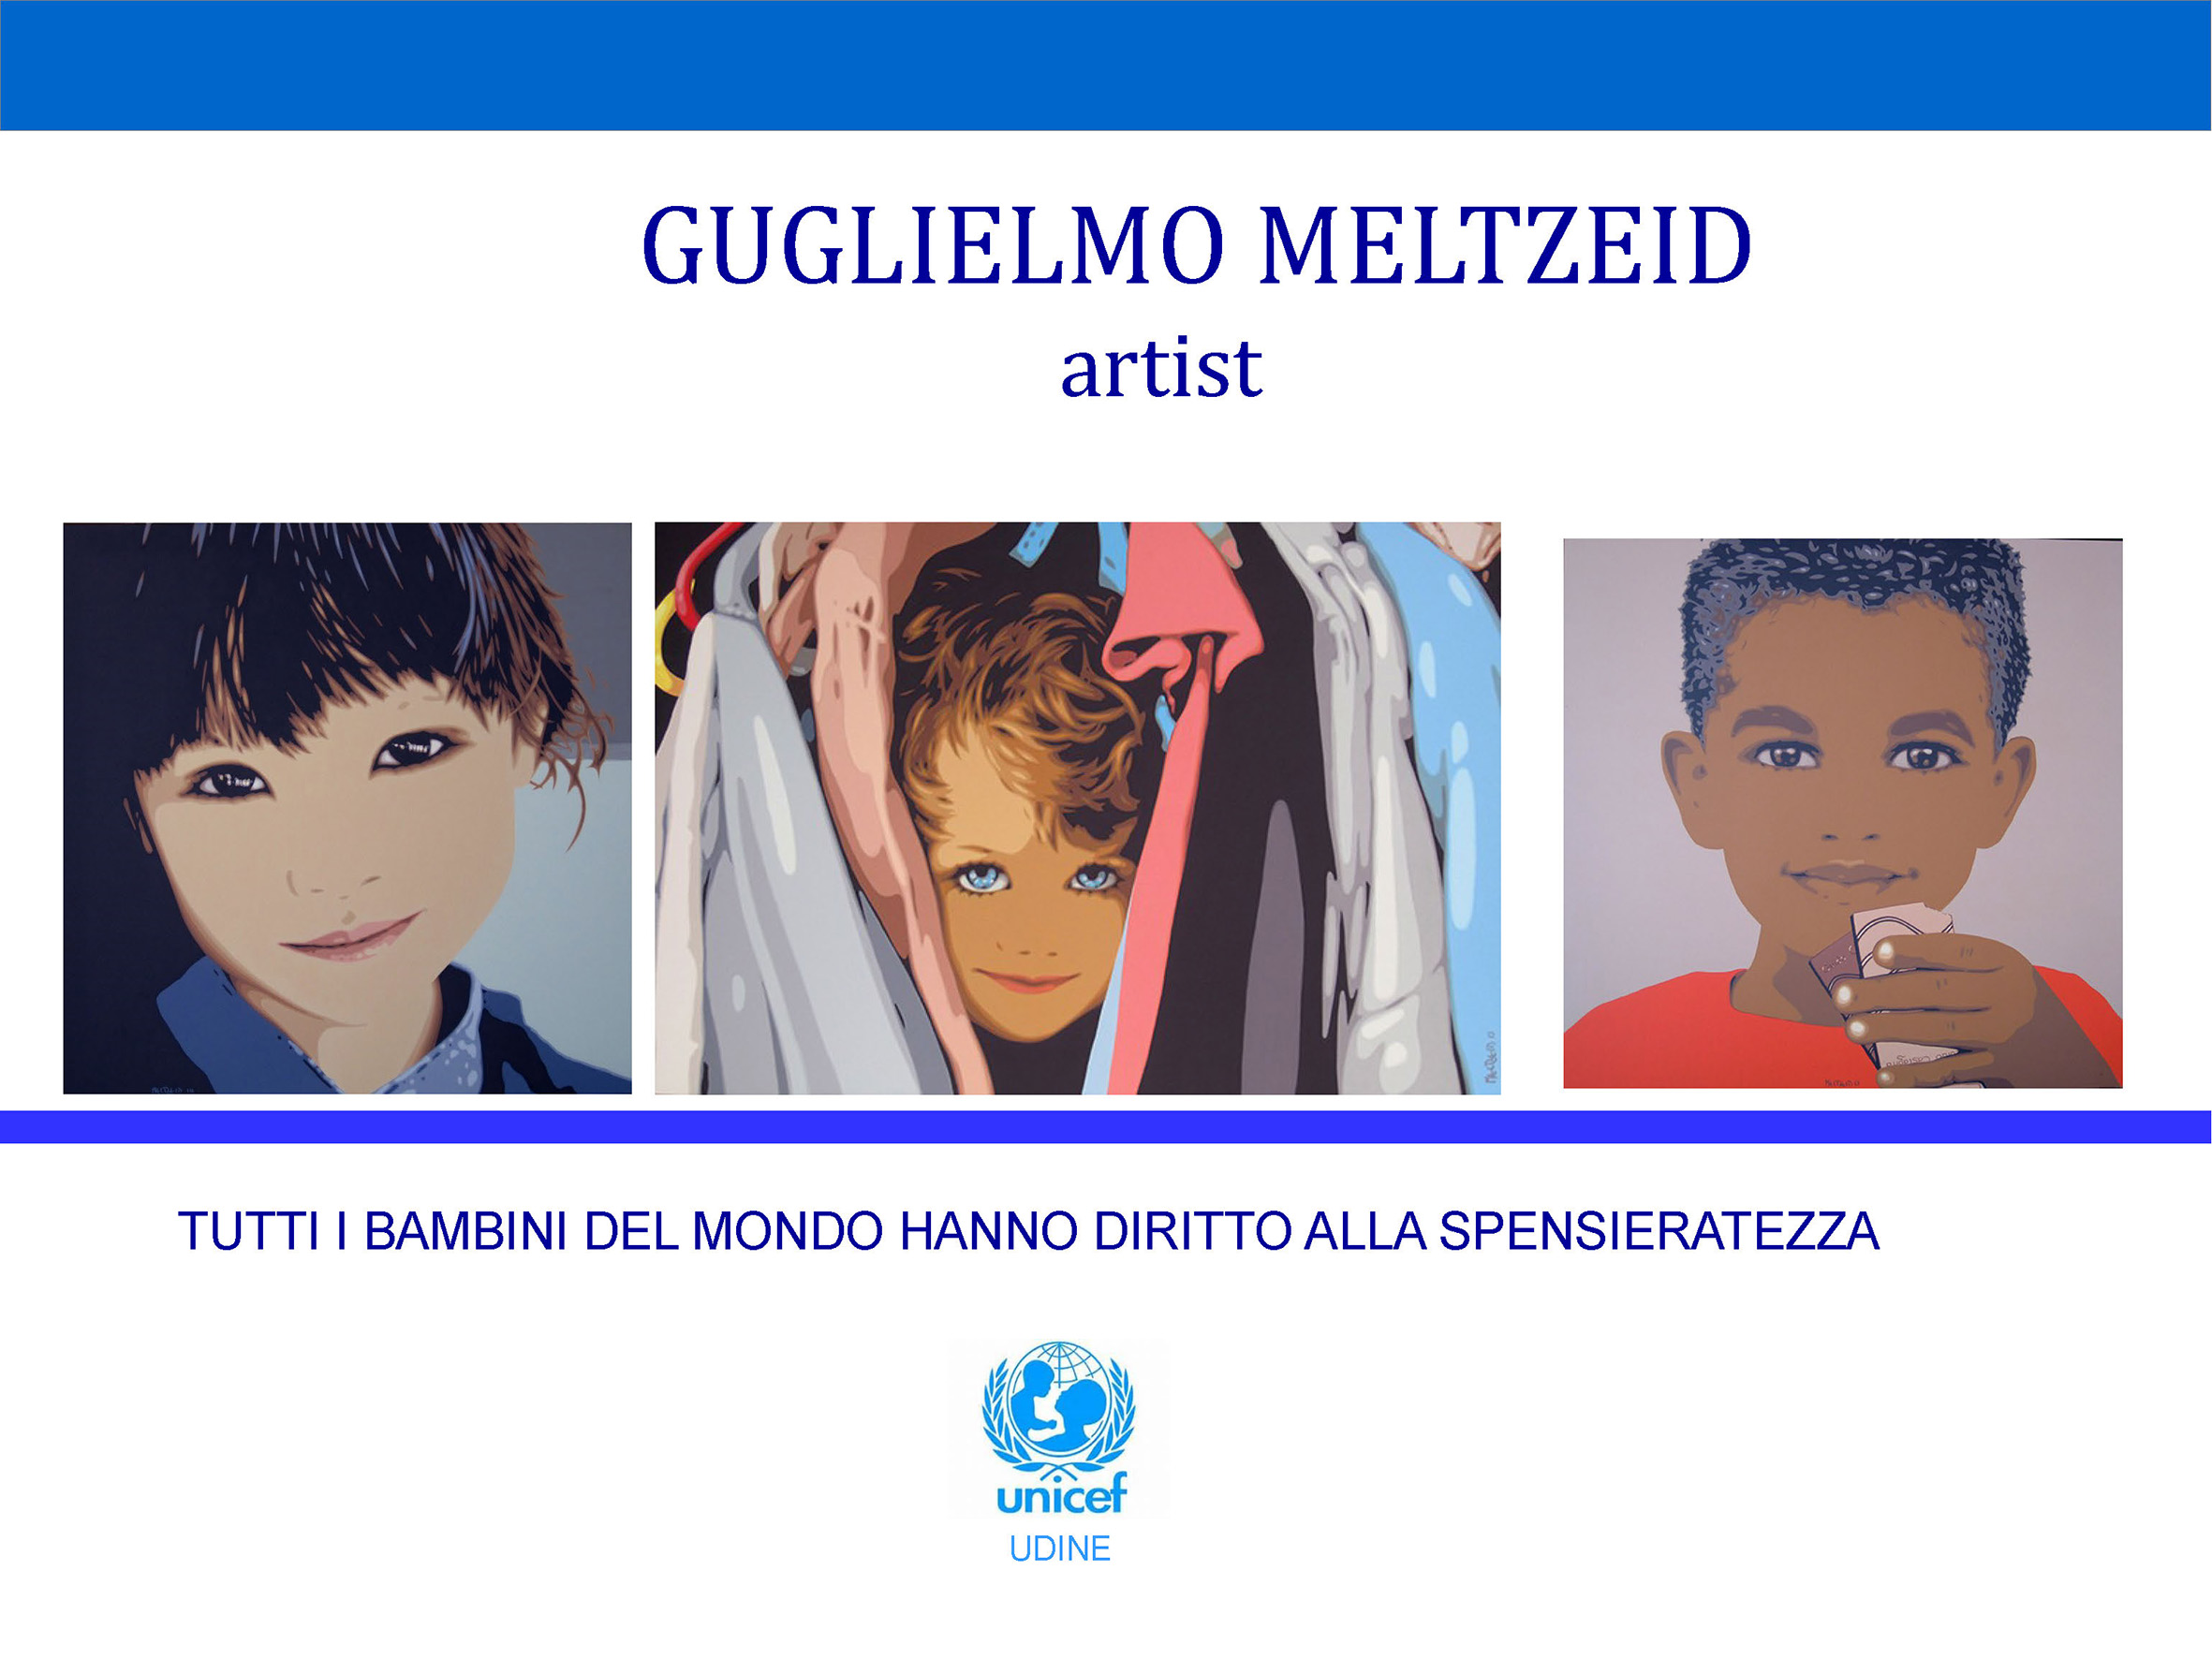 G. Meltzeid, 'Tutti i bambini hanno diritto alla spensieratezza', 2016, cartolina Unicef Udine © l'artista/UNICEF